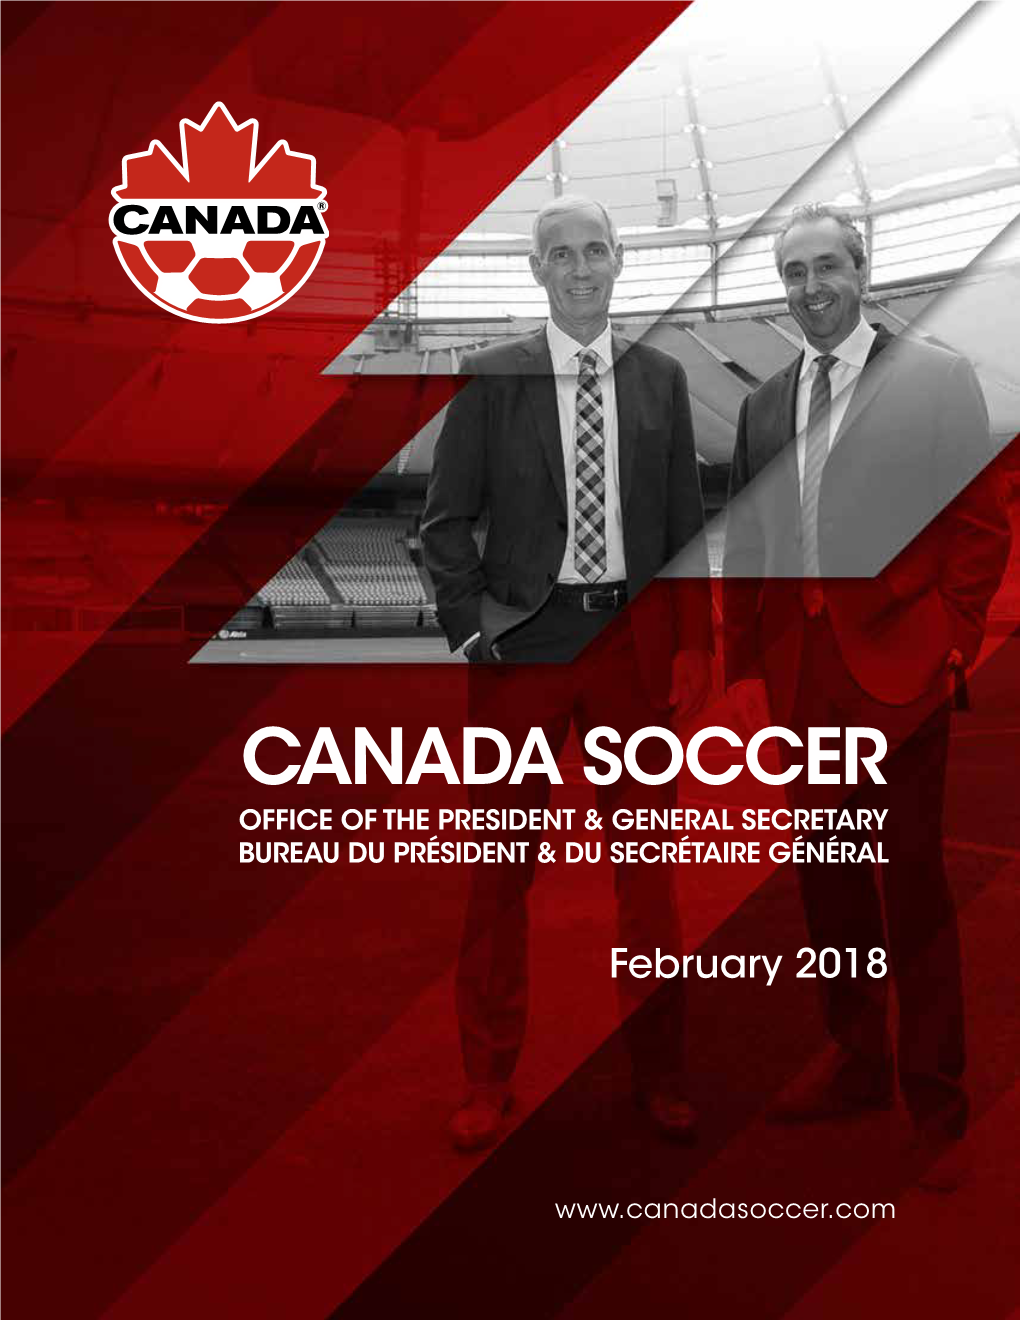 Canada Soccer Office of the President & General Secretary Bureau Du Président & Du Secrétaire Général